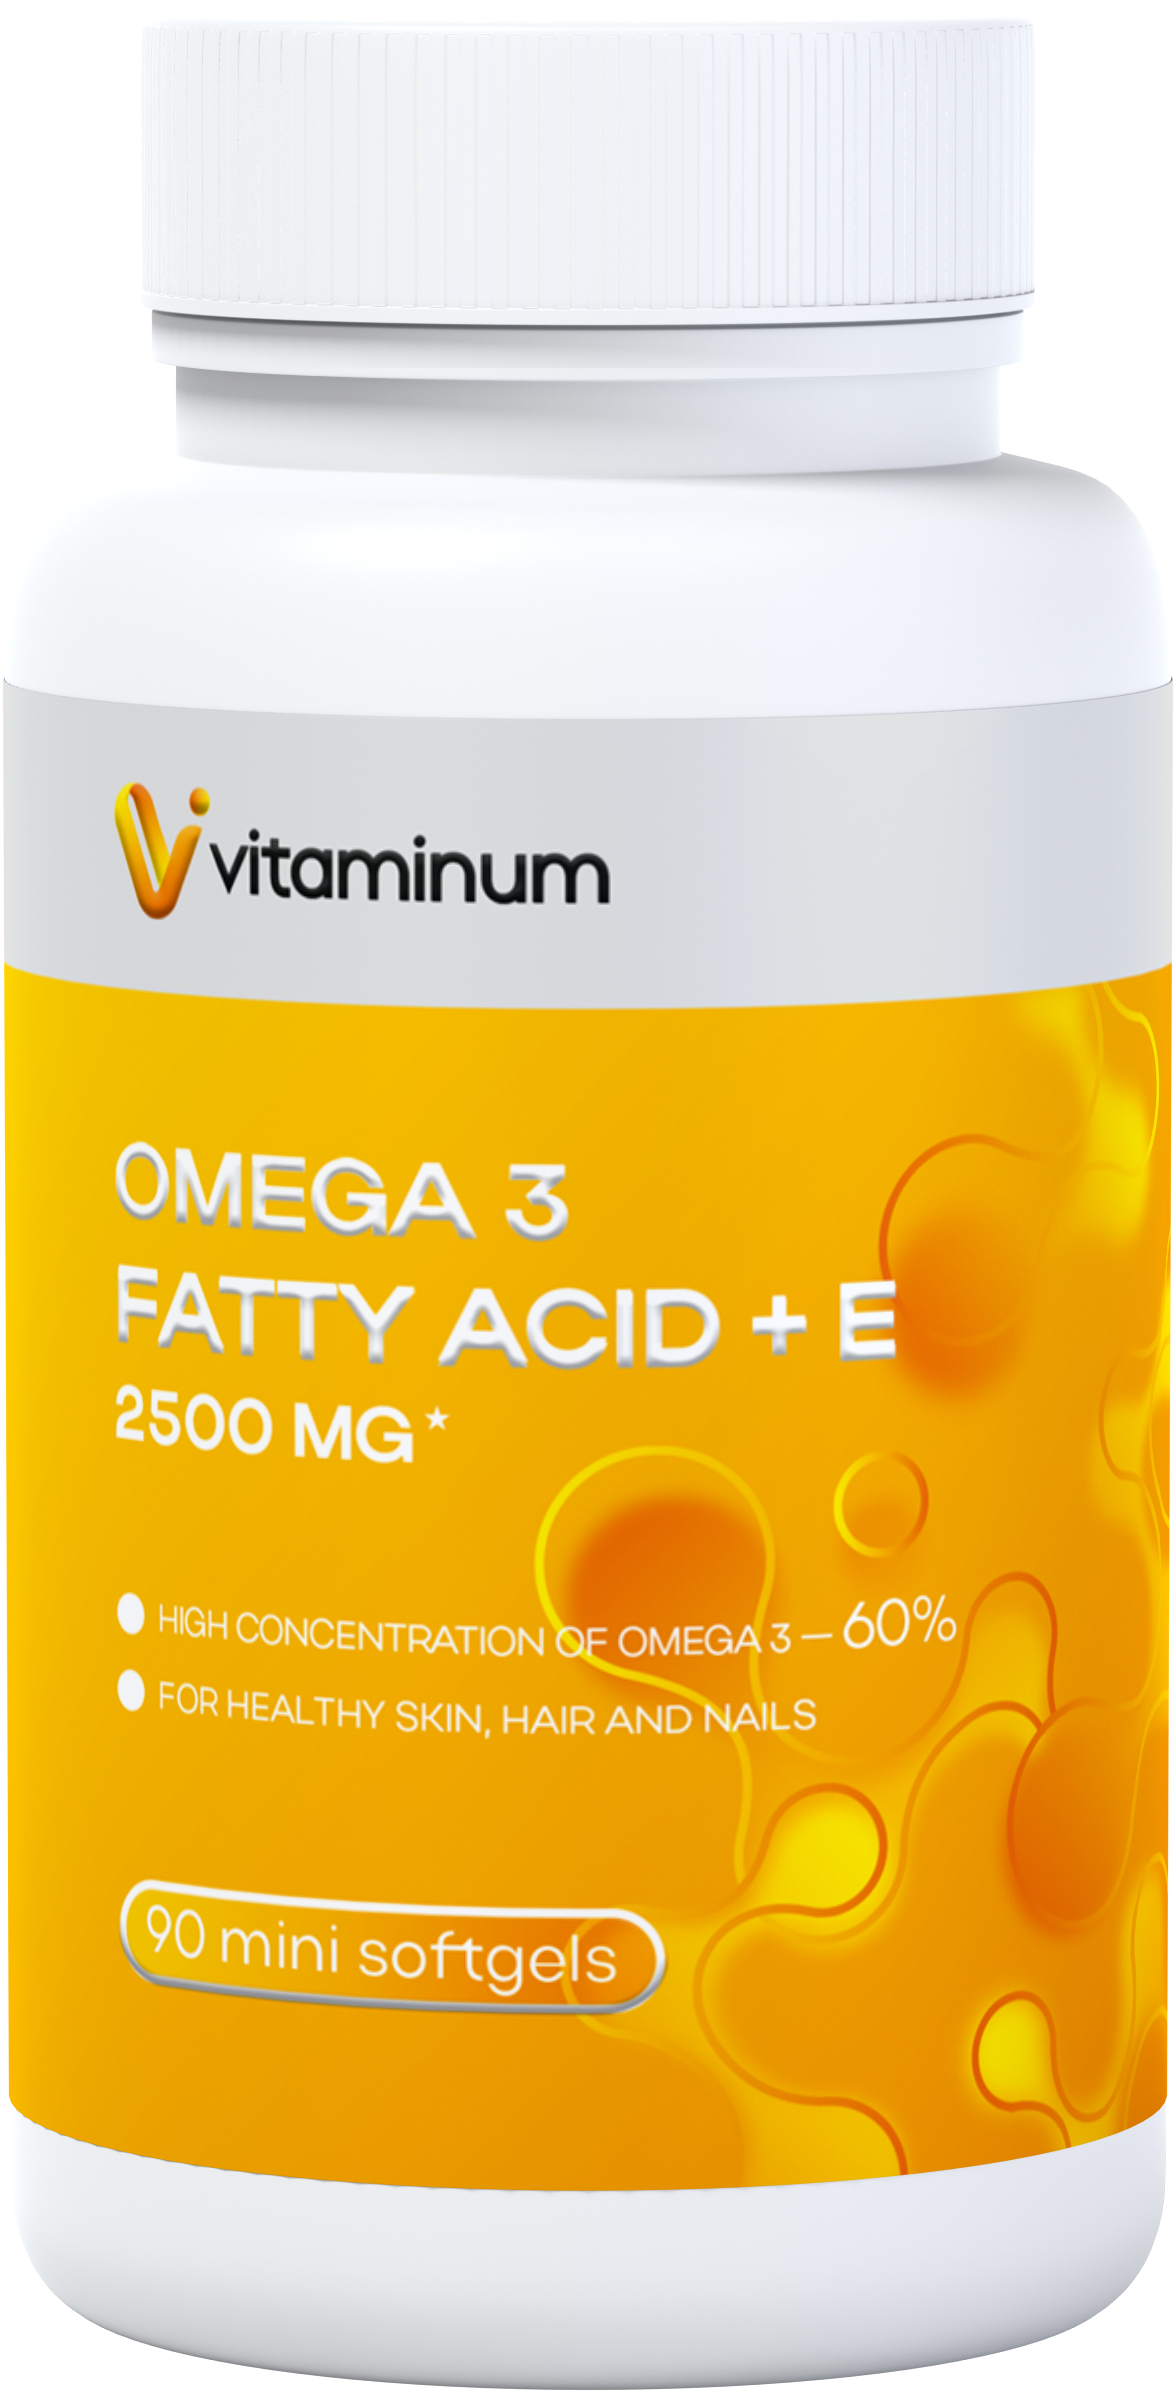  Vitaminum ОМЕГА 3 60% + витамин Е (2500 MG*) 90 капсул 700 мг   в Якутске